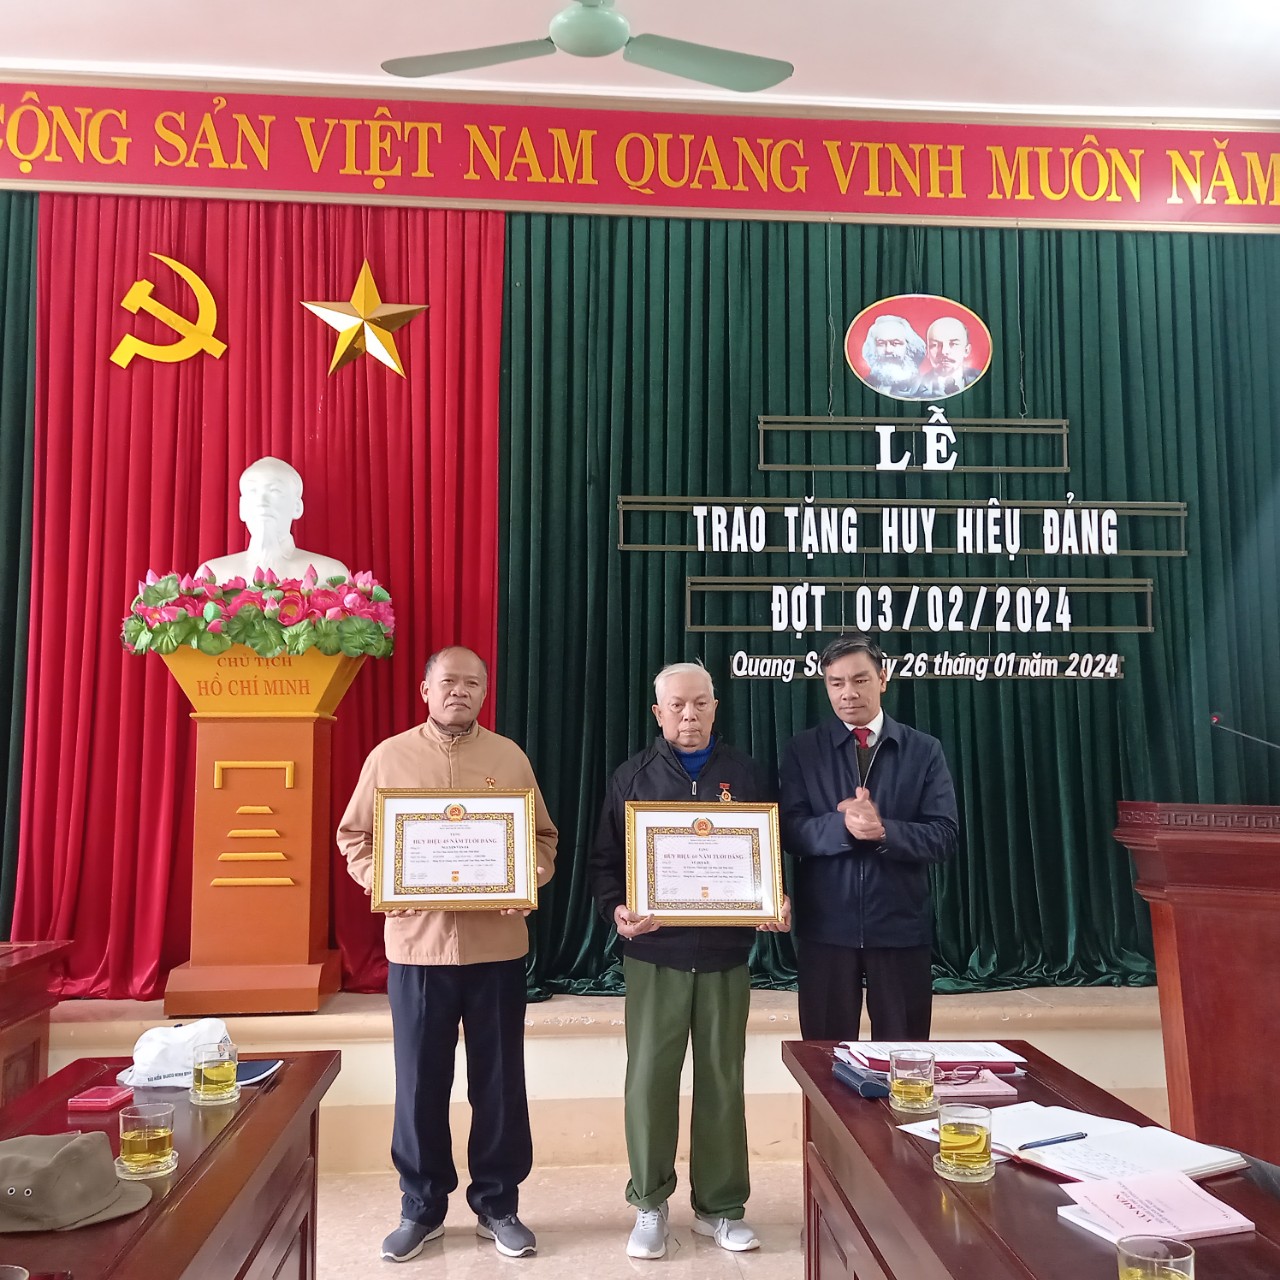 Đảng bộ xã Quang Sơn trao tặng, truy tặng Huy hiệu Đảng đợt 03/02